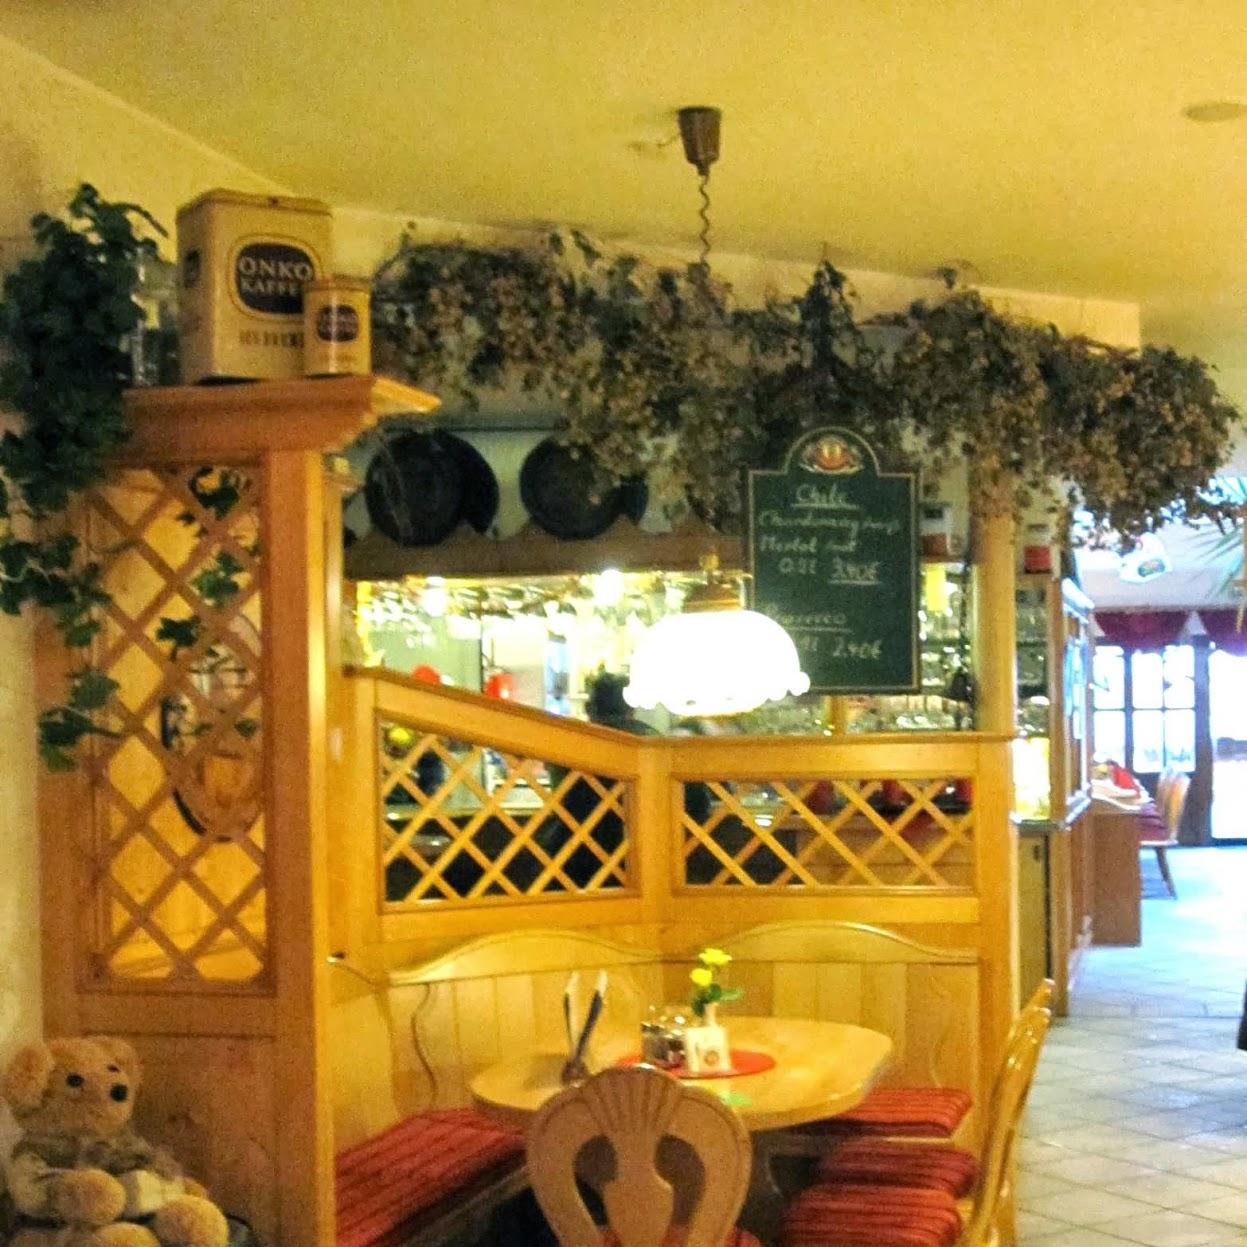 Restaurant "Bärlinchen" in  Sachsa